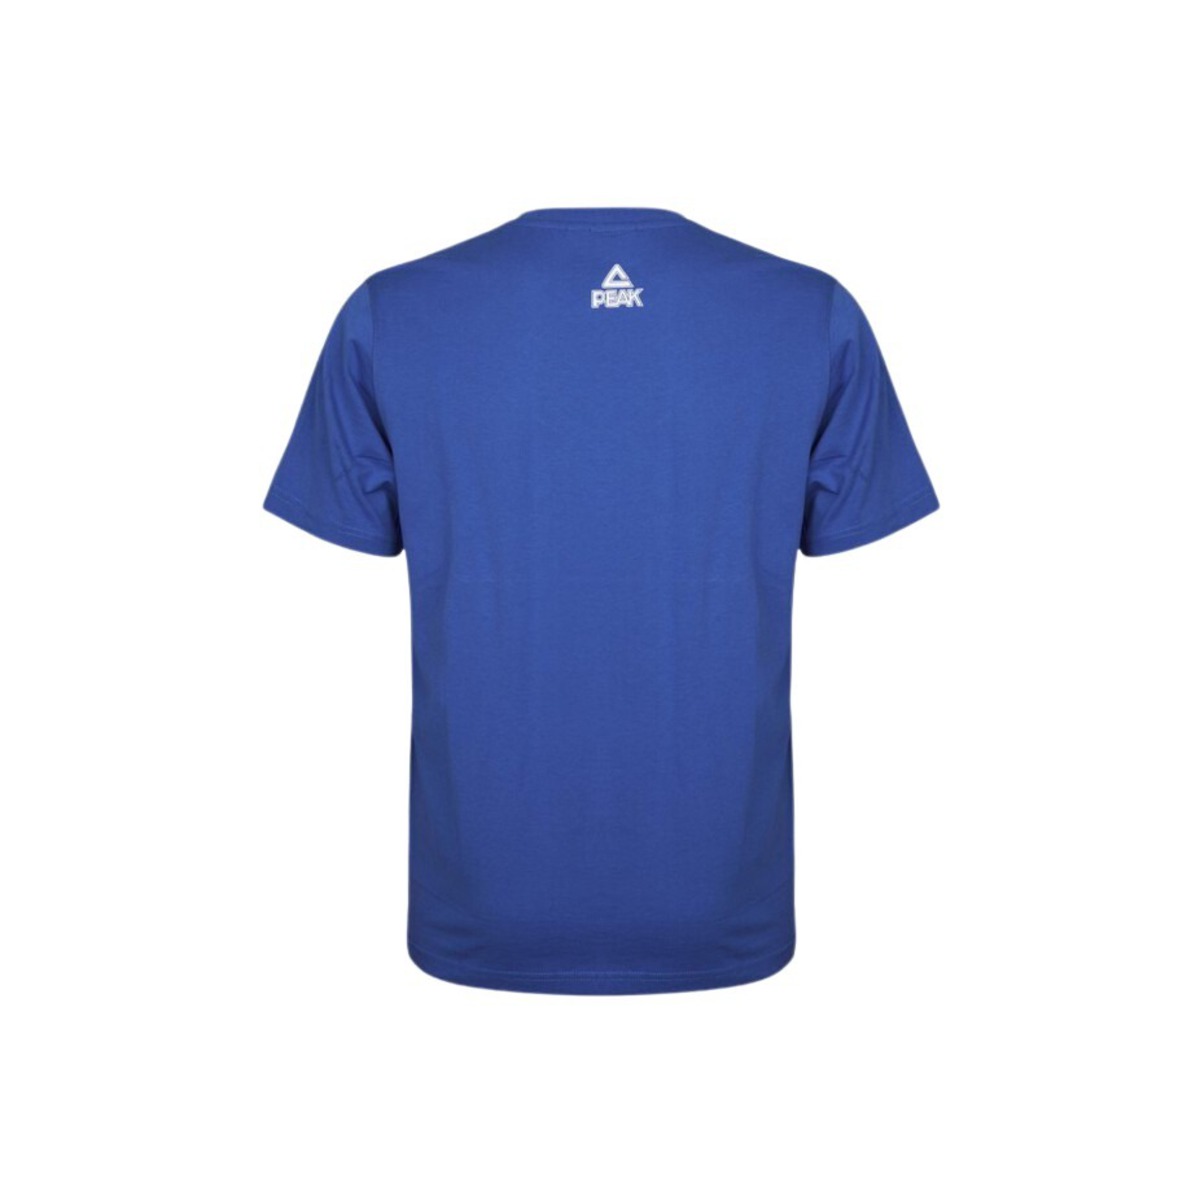 Camiseta Peak Classic - Azul  MKP